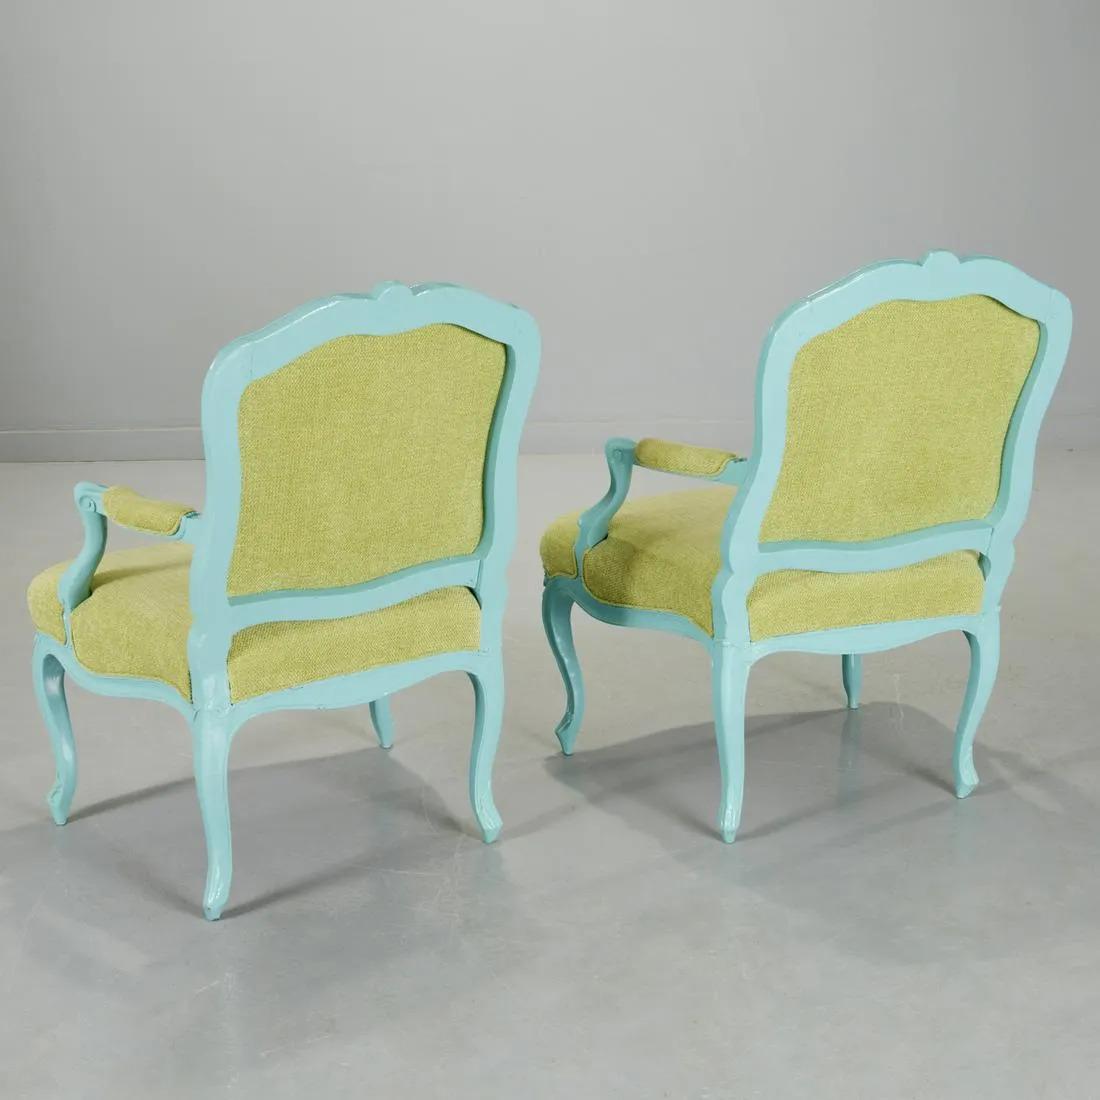 Paire de fauteuils de style Louis XIV peints en turquoise. Les chaises sont recouvertes d'une épaisse laque sur des cadres en noyer, d'un revêtement en velours et de pieds cabriole.